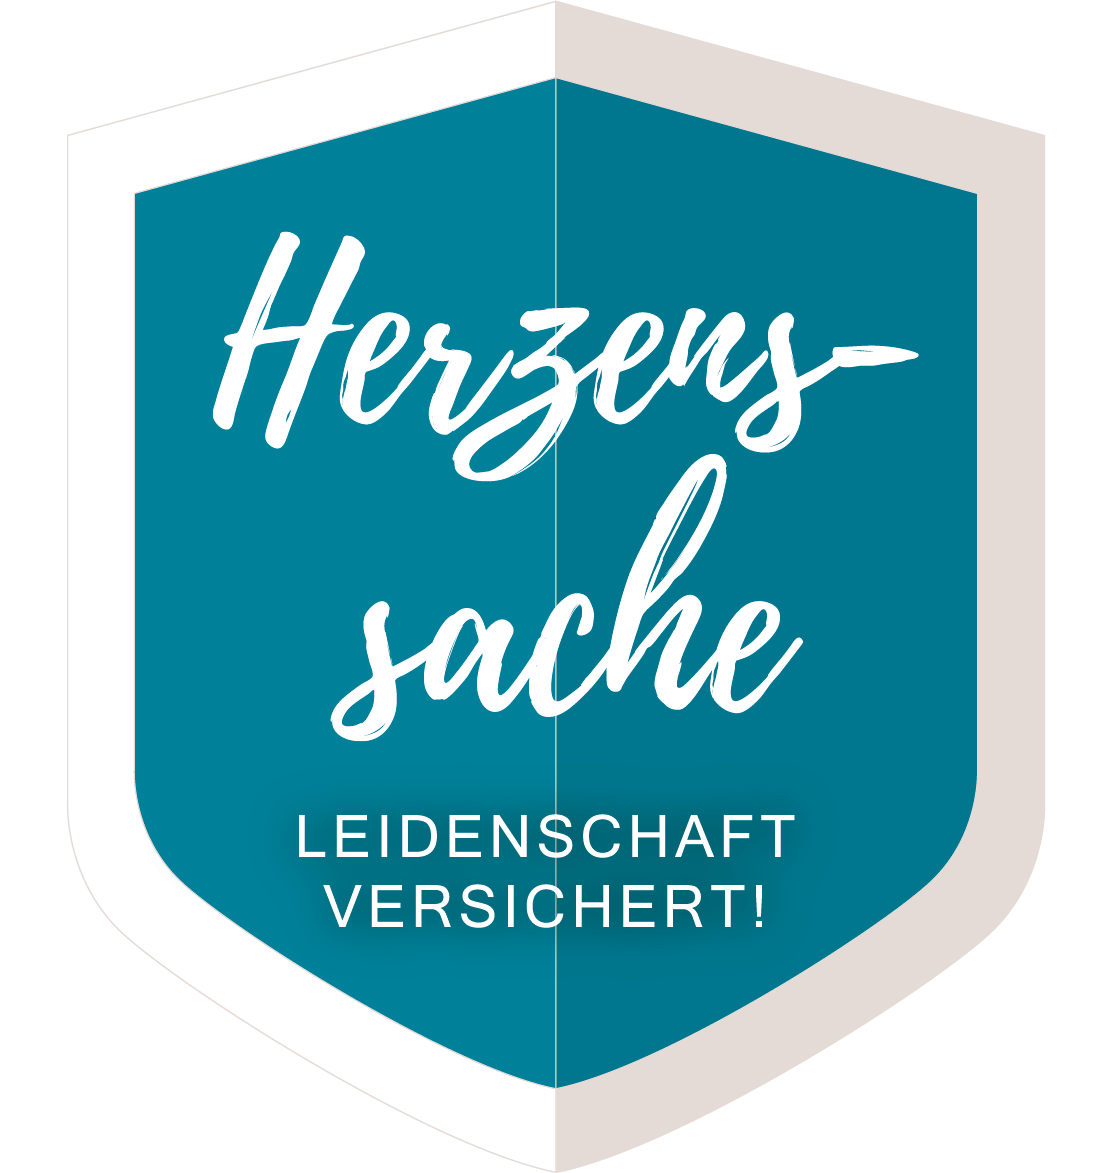 logo-herzenssache